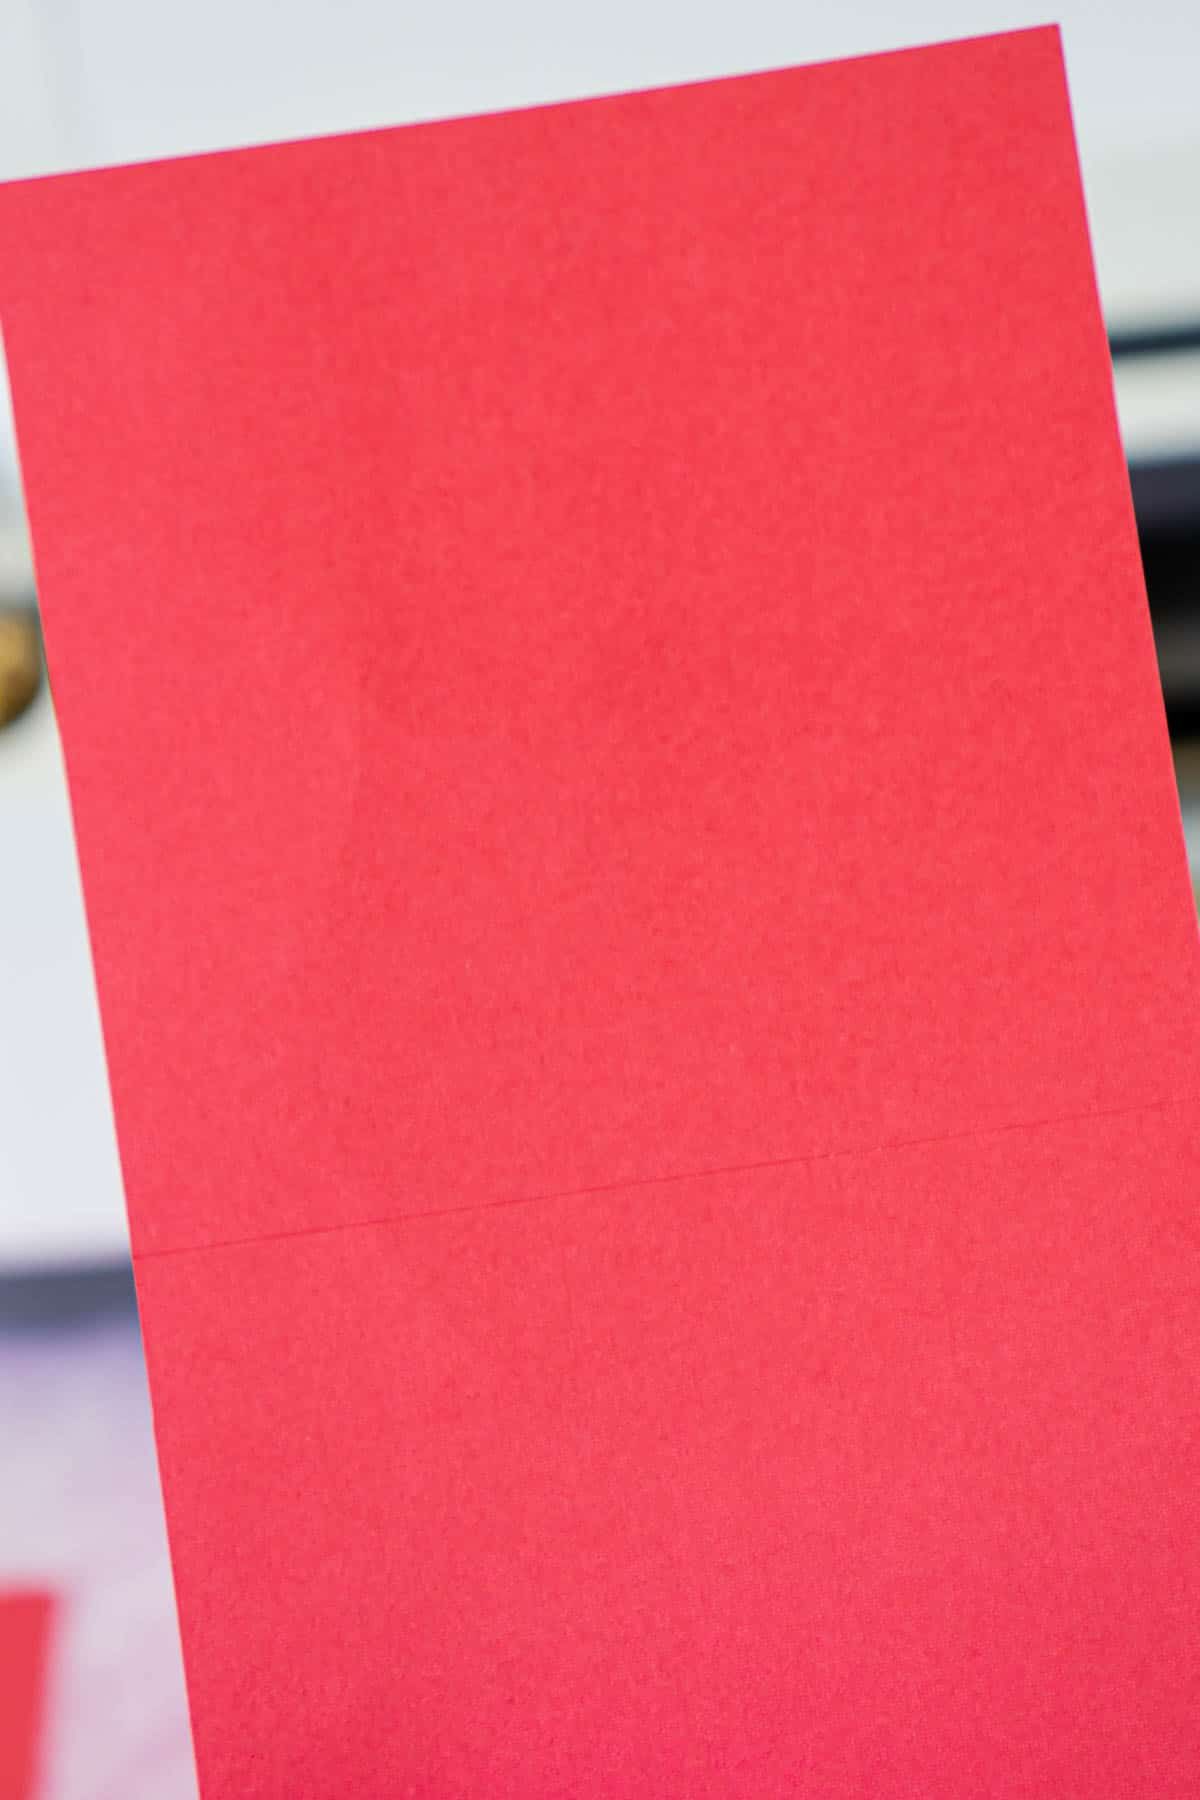 Sarkanā kartona gabals ar punktu līnijām